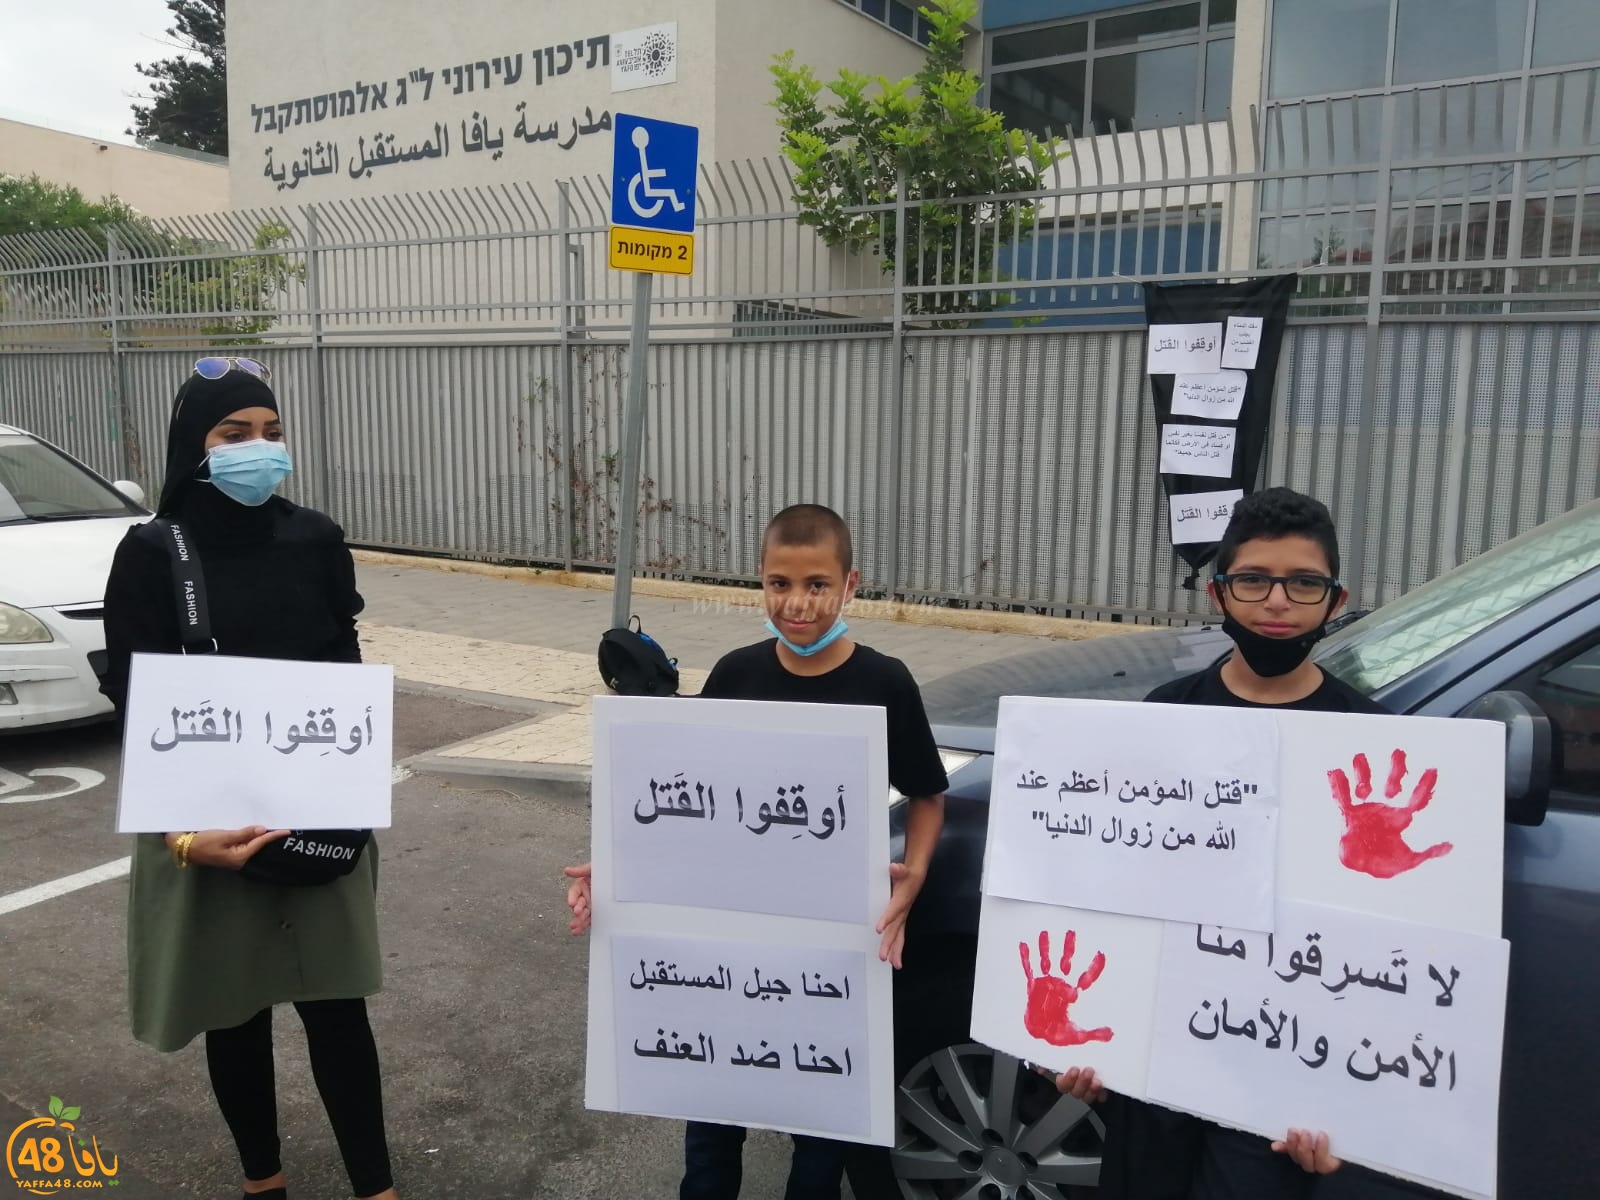  مدرسة يافا المستقبل تُنظم وقفة احتجاجية ضد العنف 